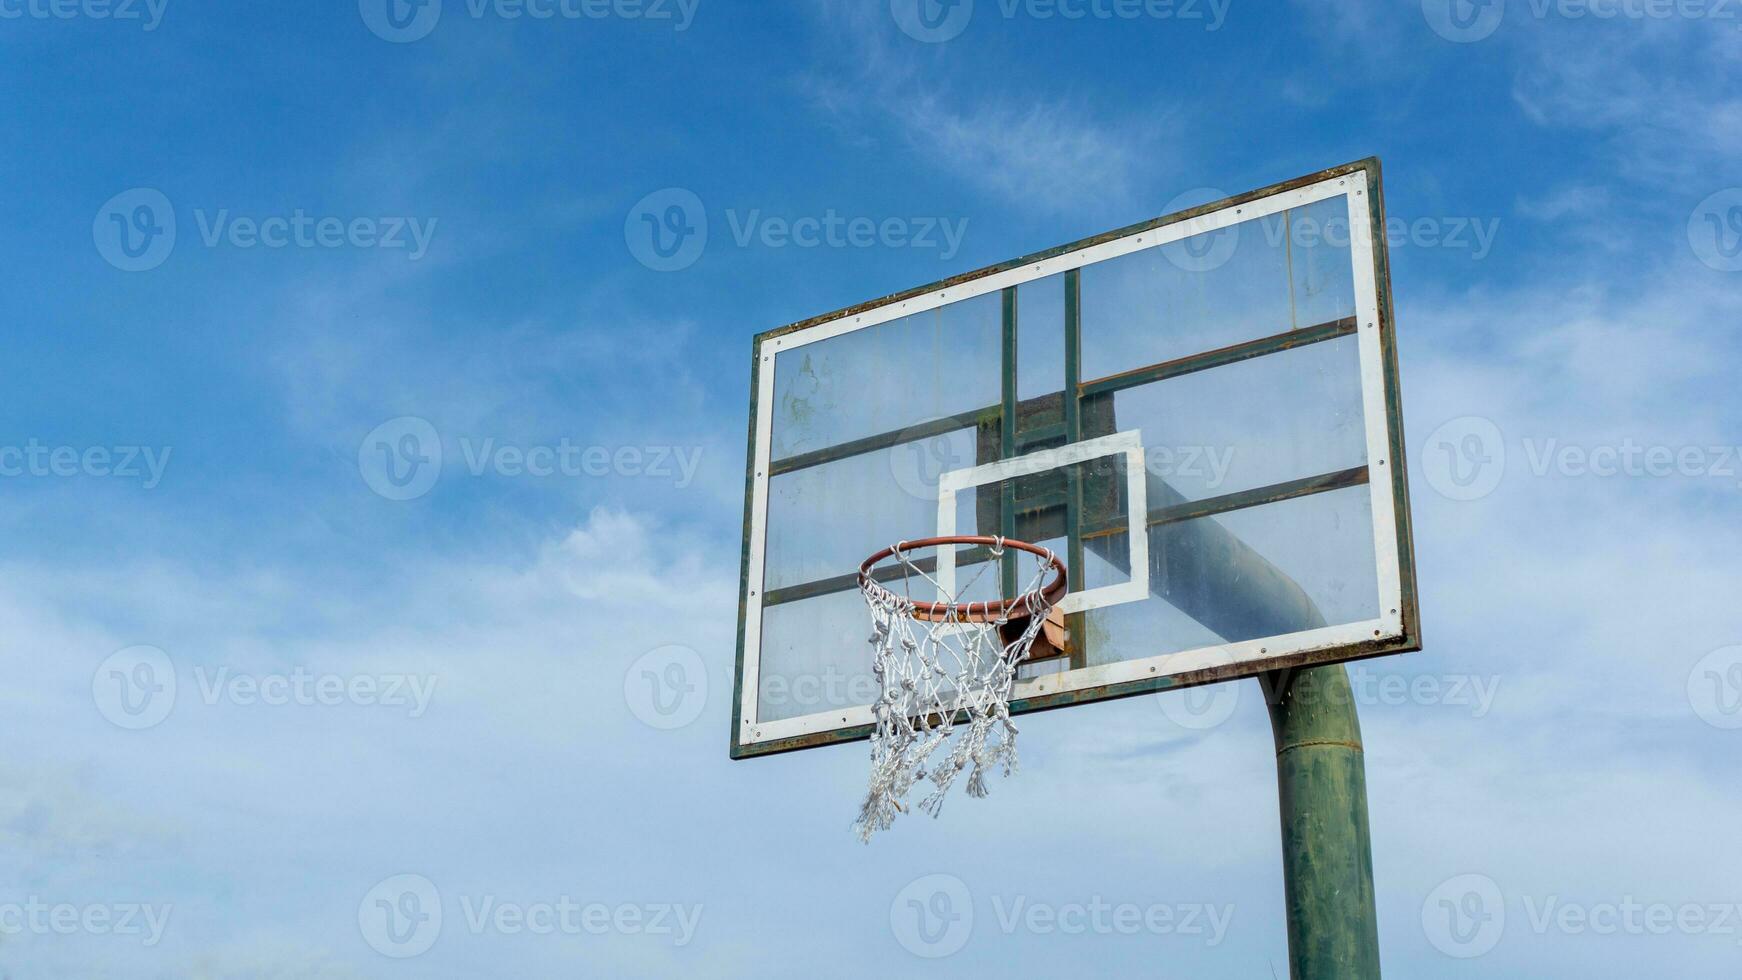 låg vinkel se av basketboll ringa på himmel bakgrund. utomhus- basketboll ring. foto